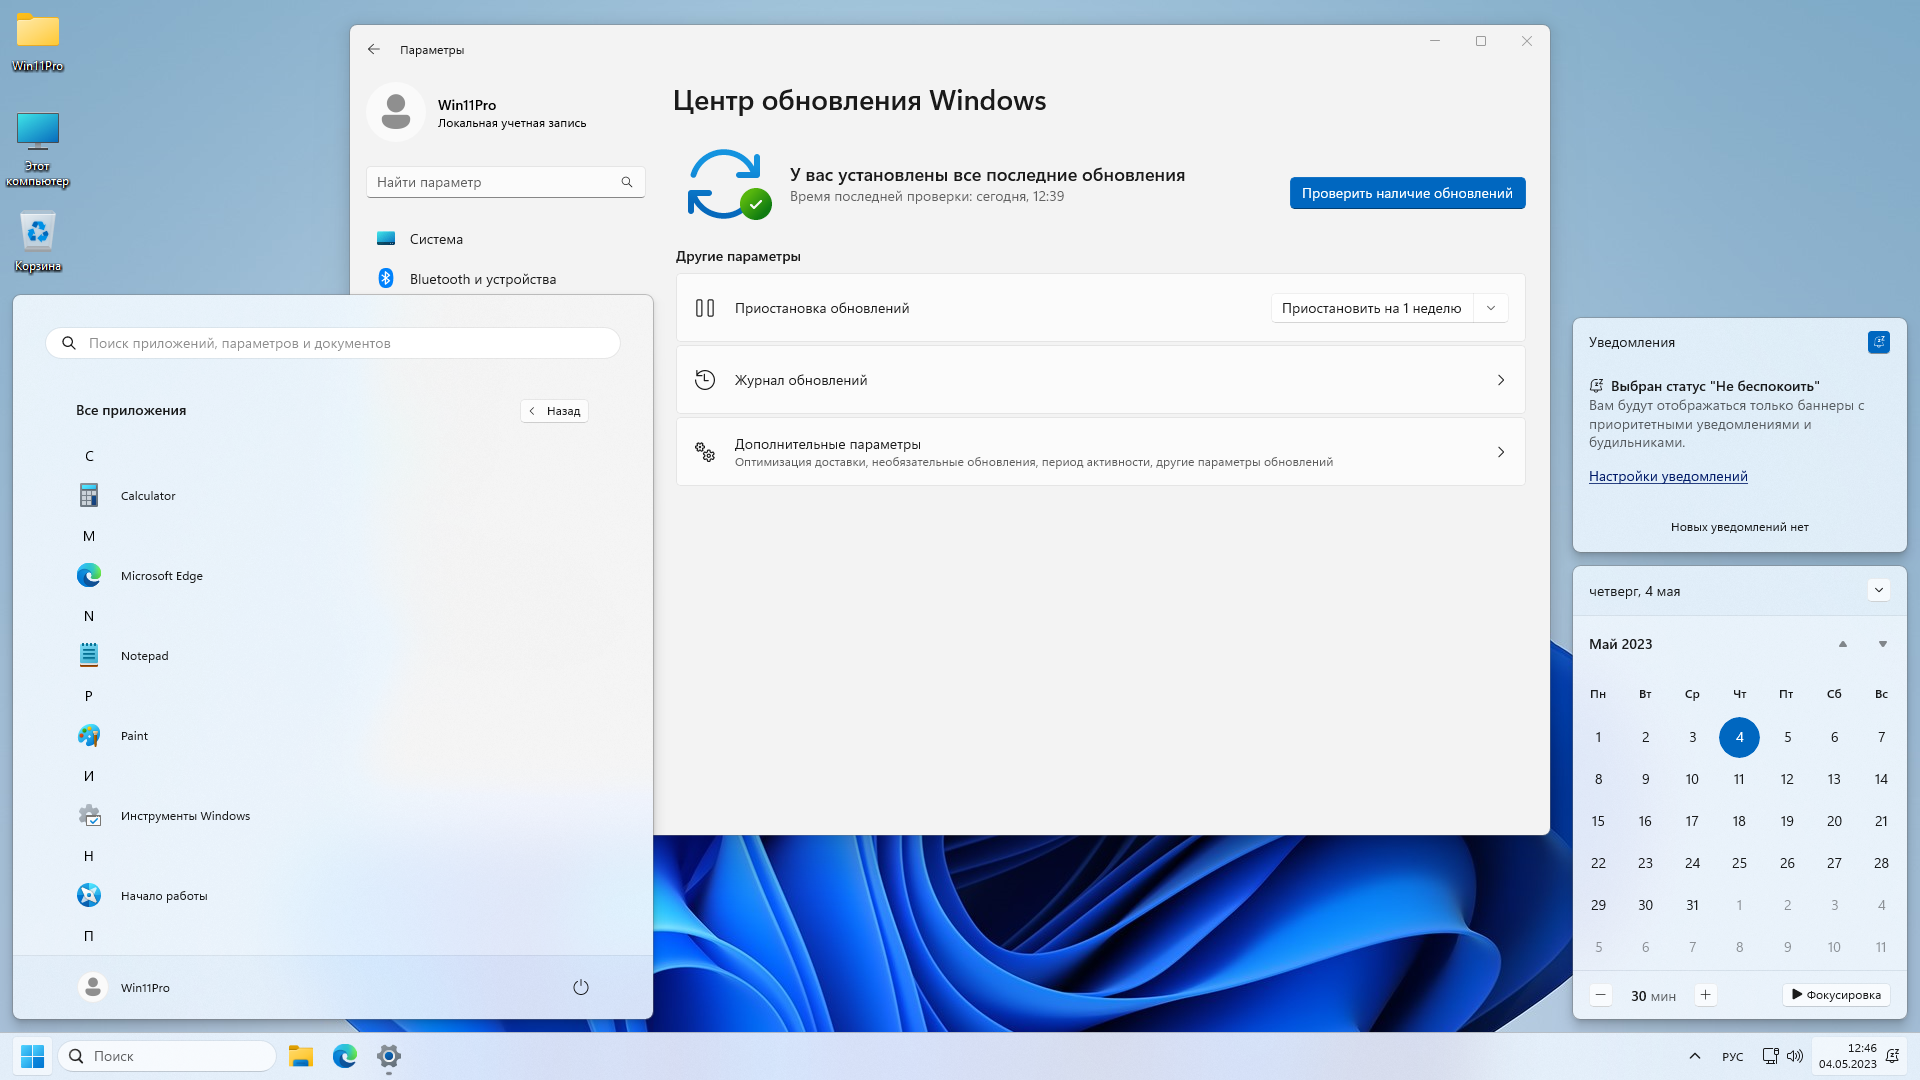 Windows 11 Pro 22H2 Build 22621.1555 x64 by SanLex [Lightweight] [Ru/En] (2023.05.04)